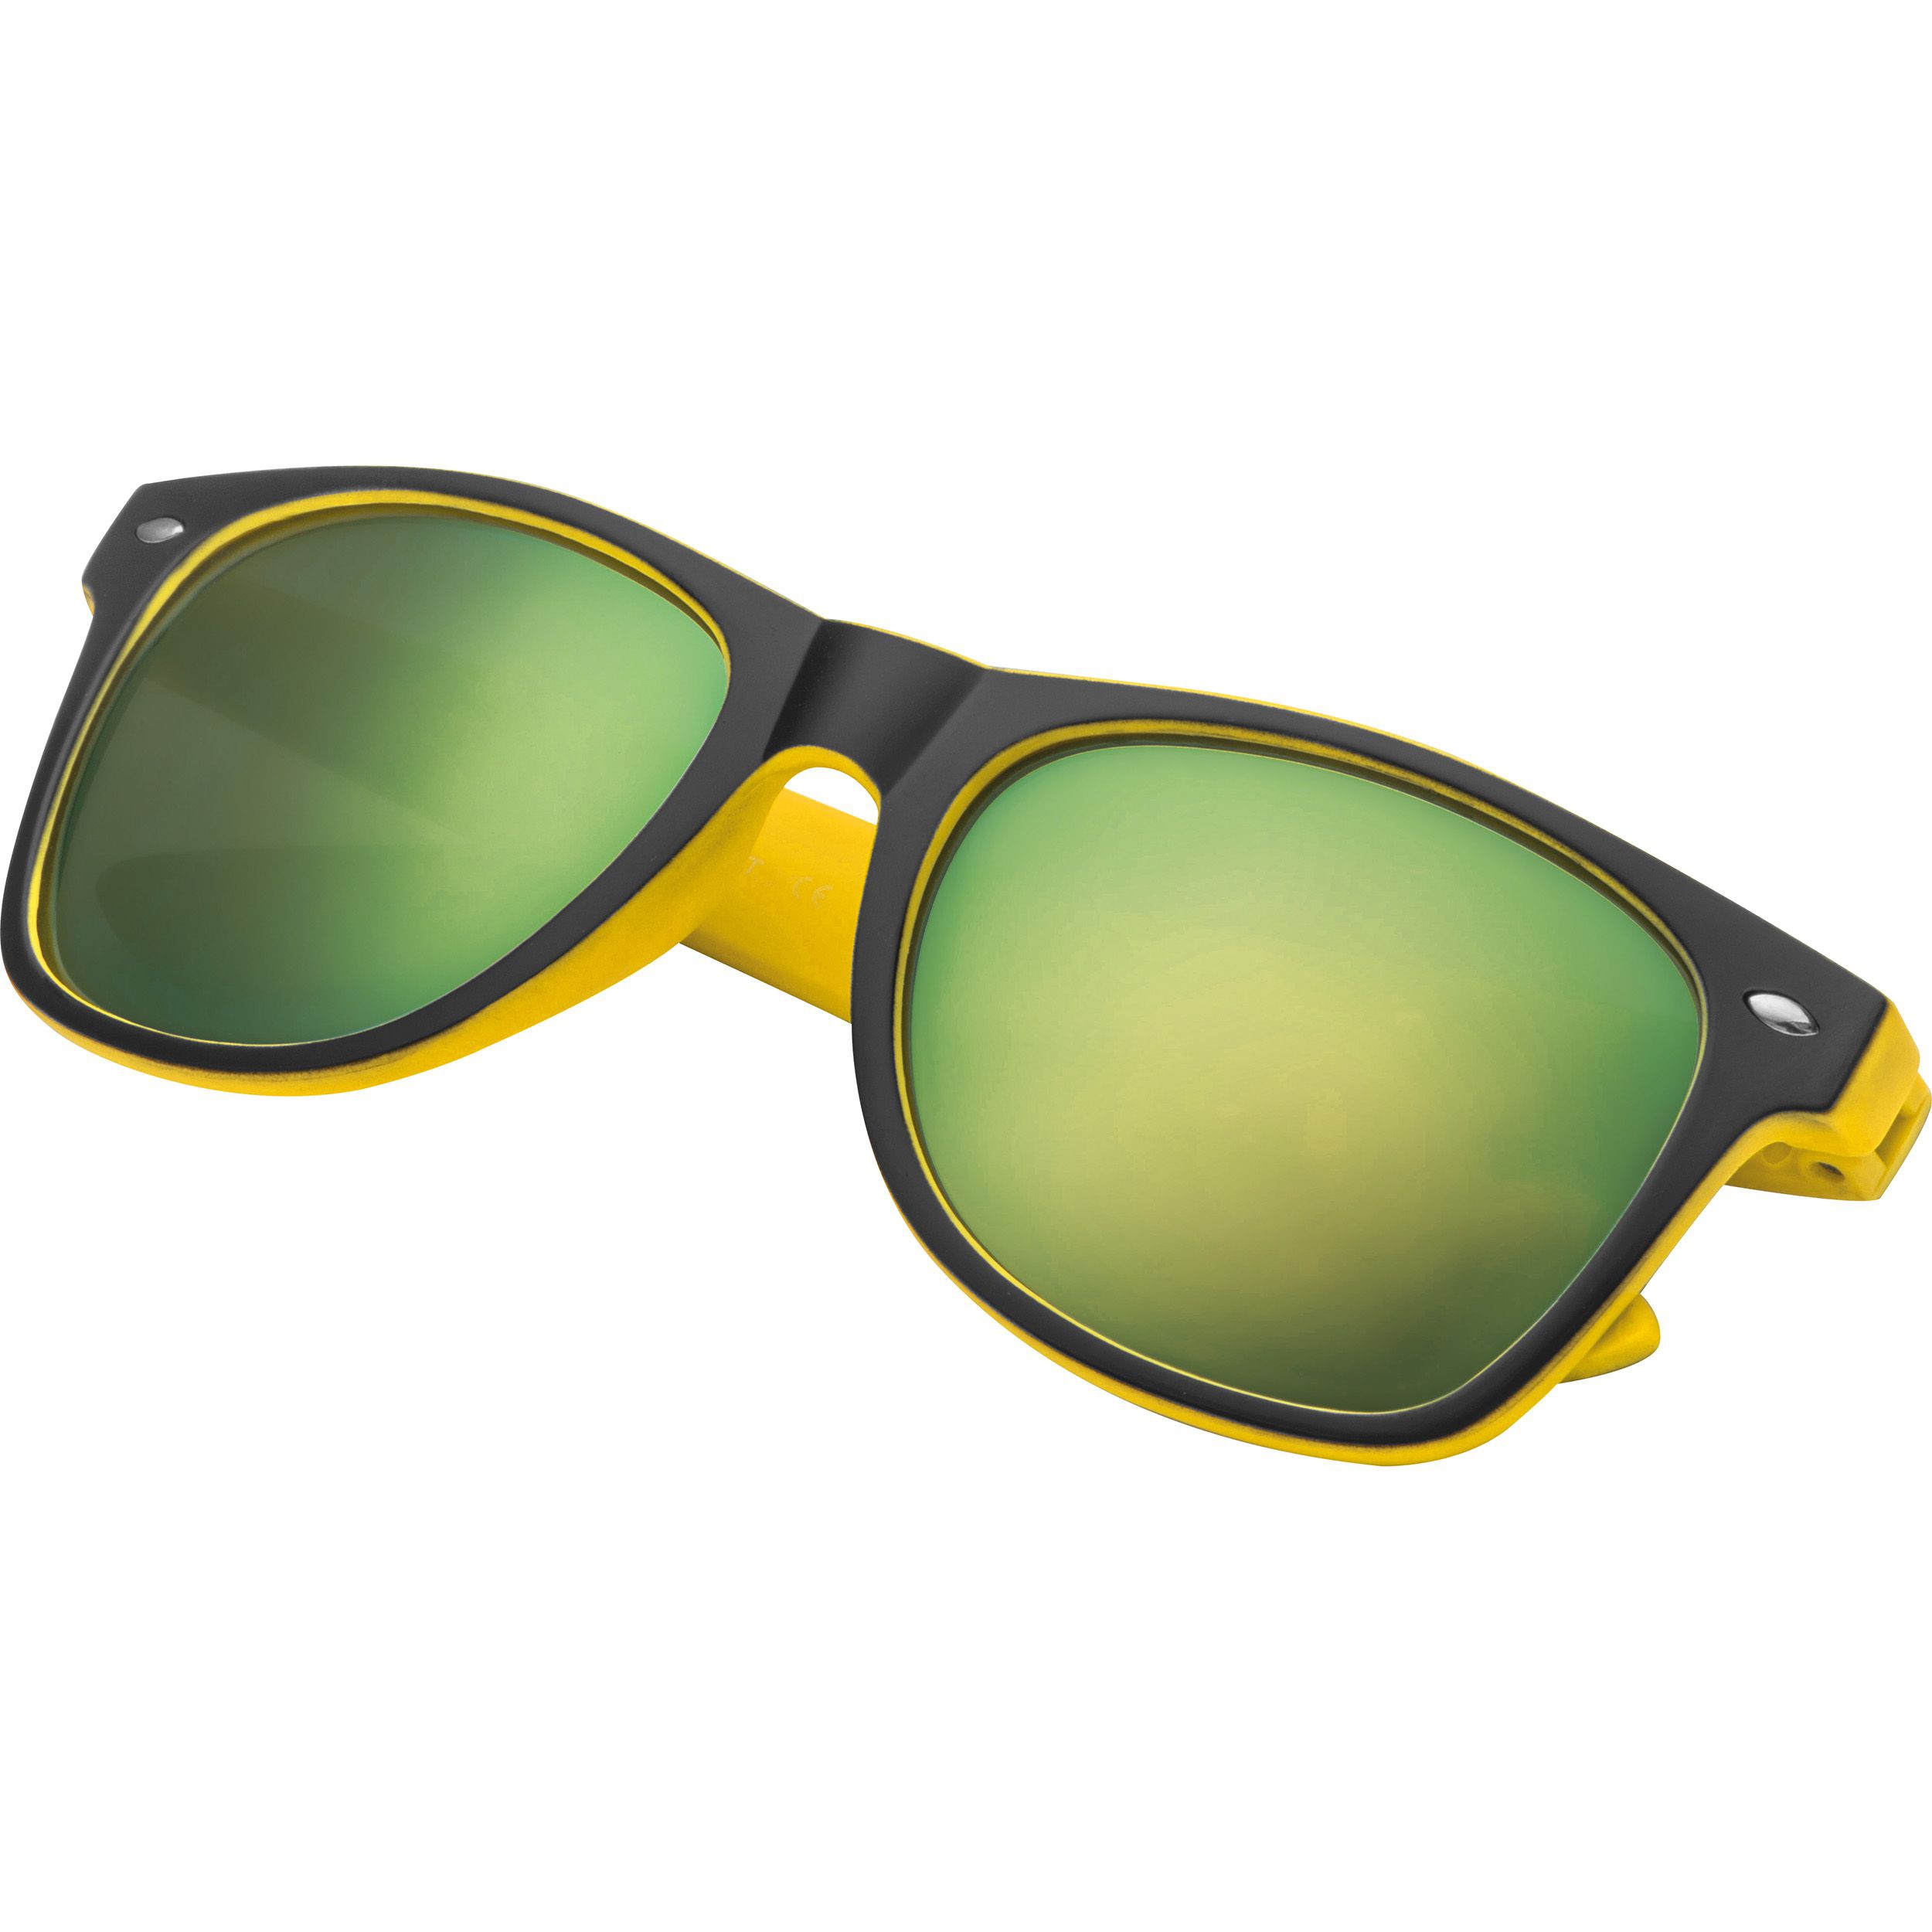 Sonnenbrille aus Kunststoff mit verspiegelten Gläsern, UV 400 Schutz, gelb